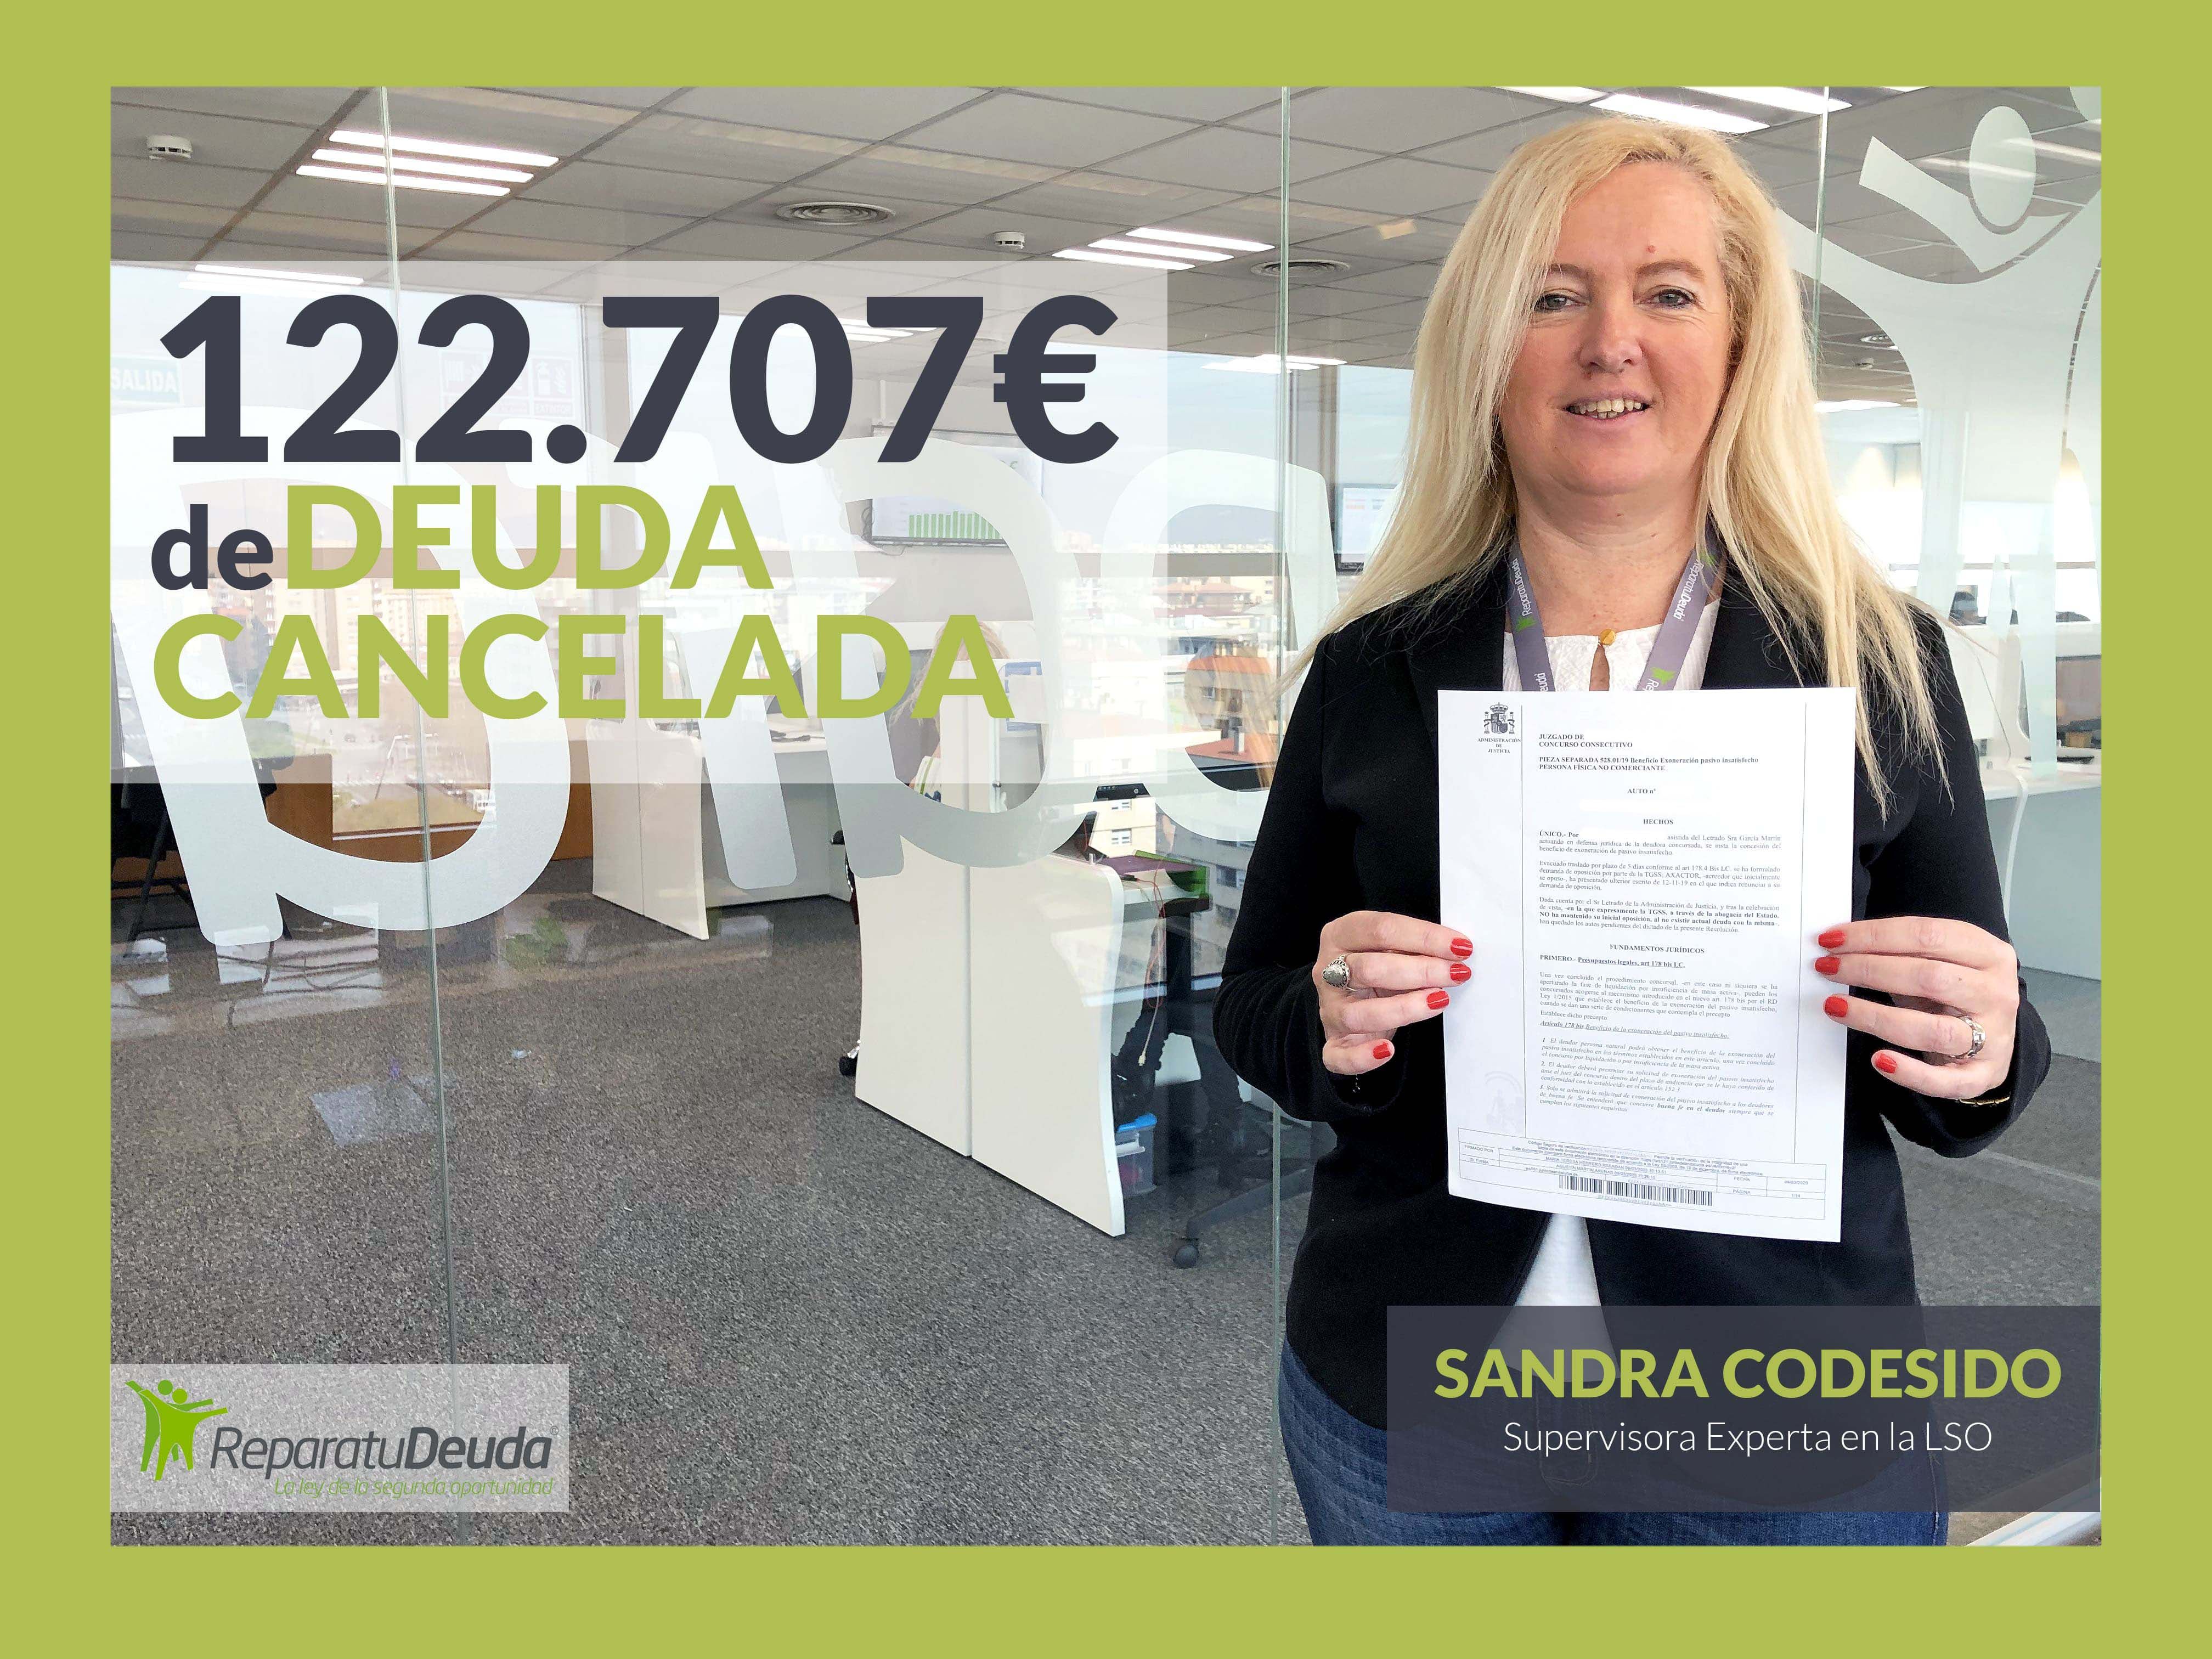  Repara tu Deuda Abogados consigue cancelar 122.707 euros en Mallorca con la Ley de Segunda Oportunidad 